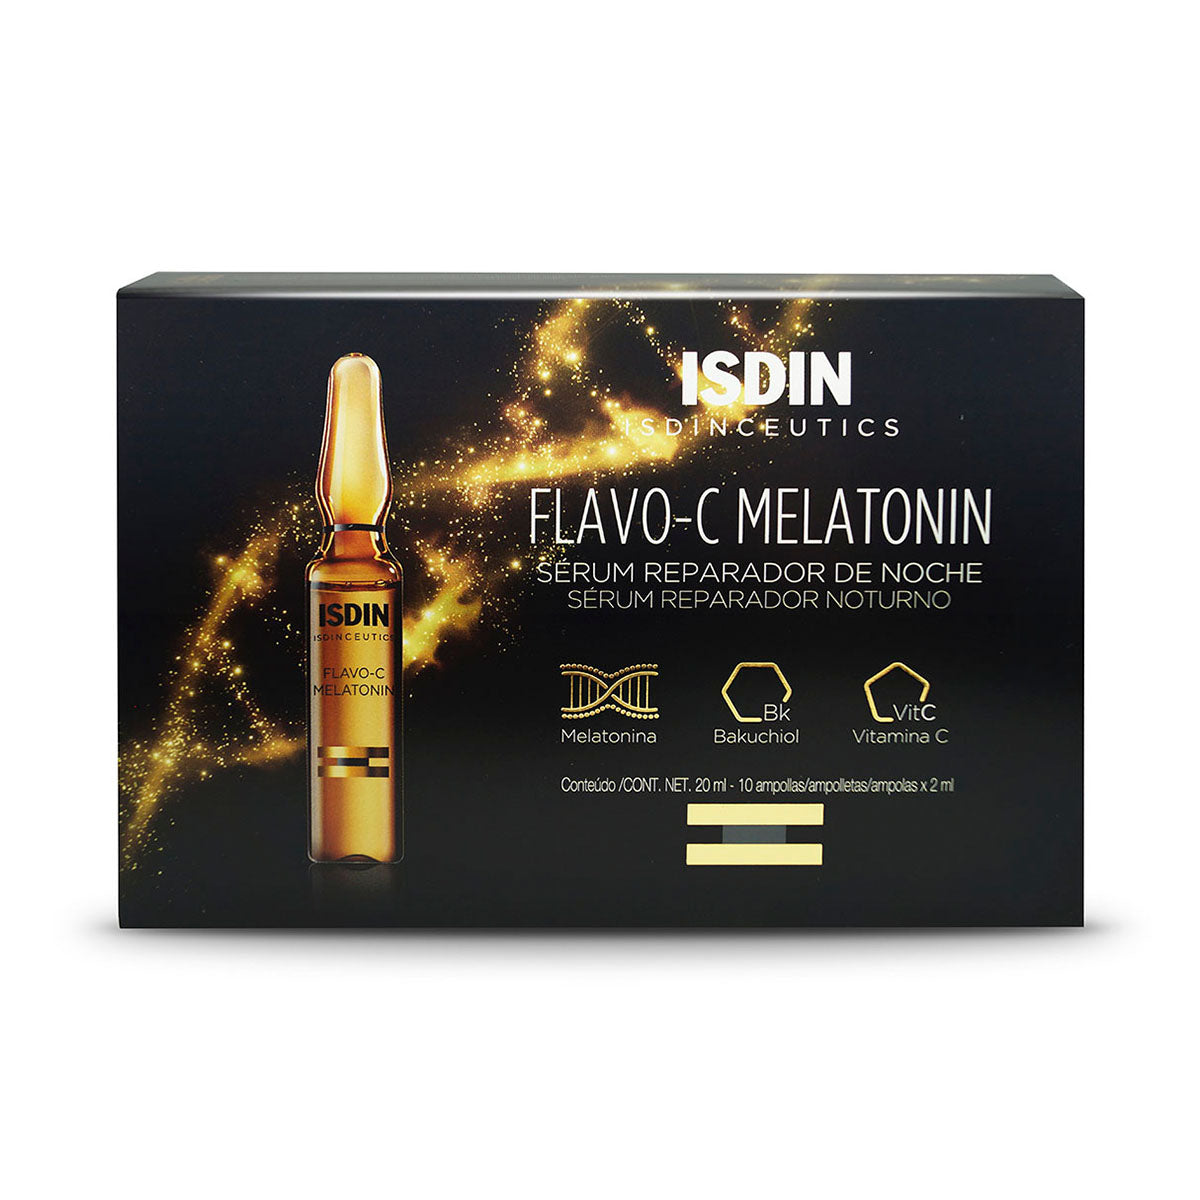 Isdin Isdinceutics Flavo-c Melatonina,  Serum reparador de noche.